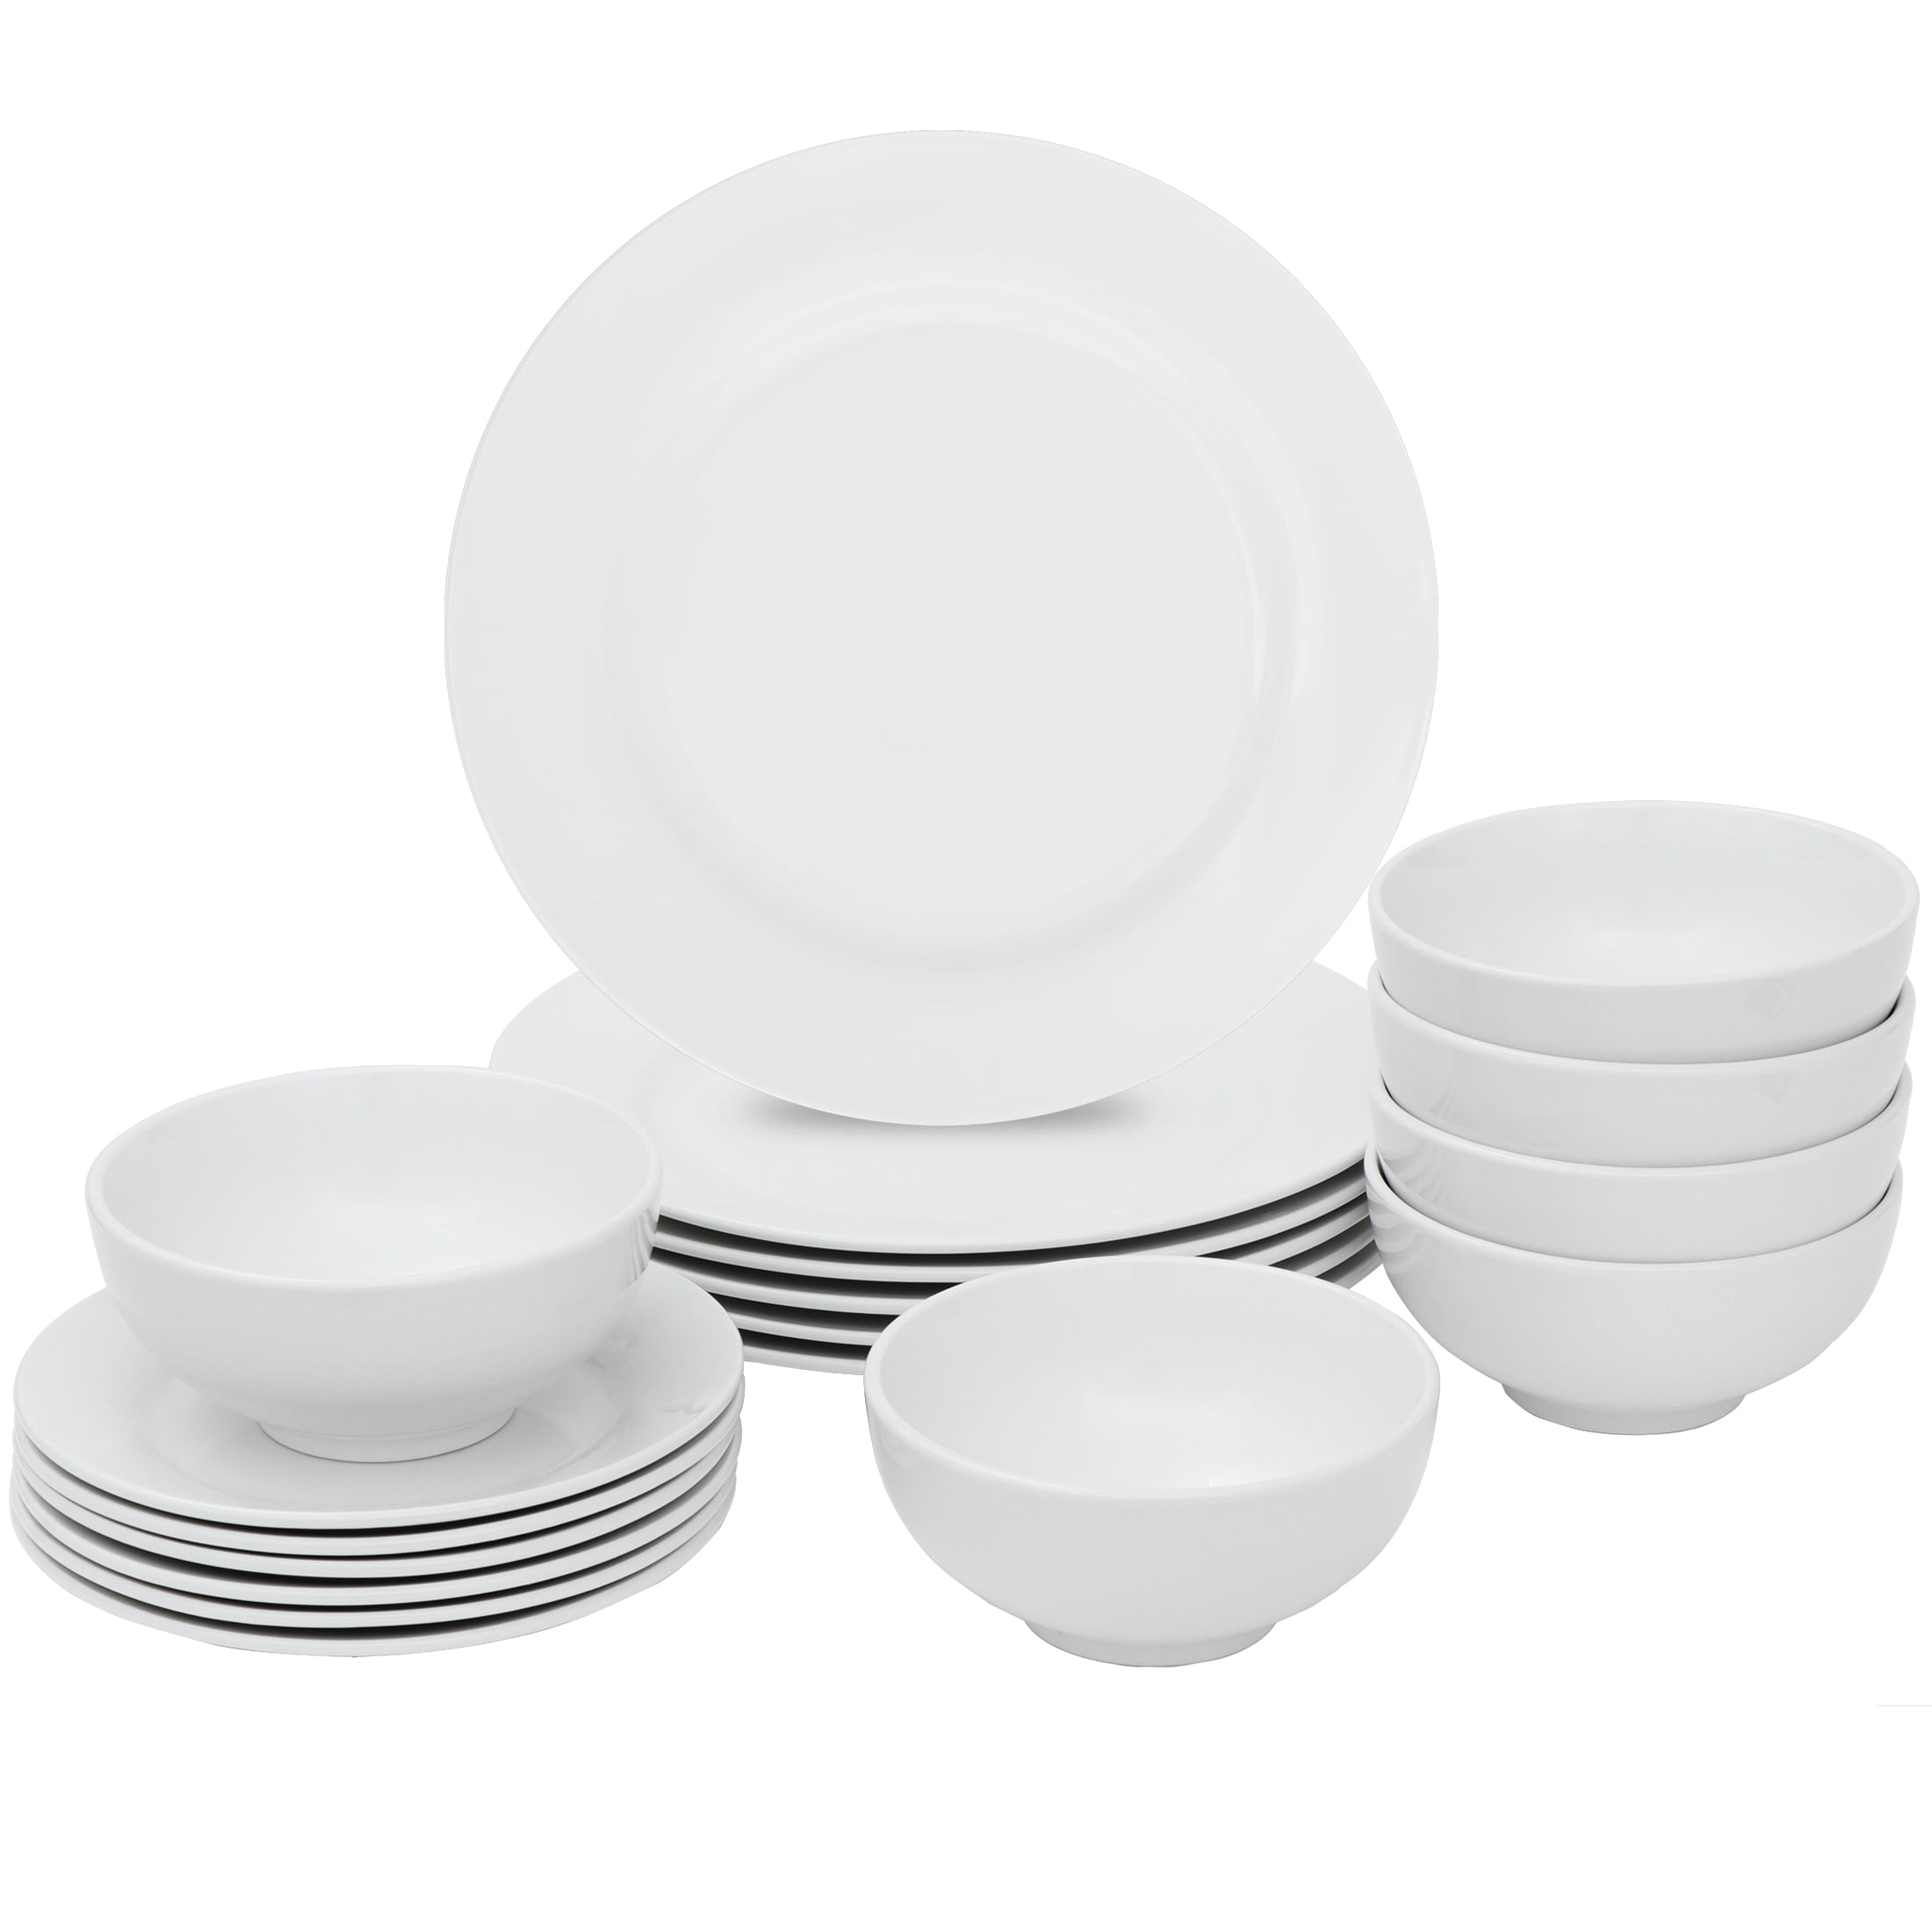 Porcelain Dinnerware Set 45 Piece Banquet Plates Dishes Bowls White Service 8 